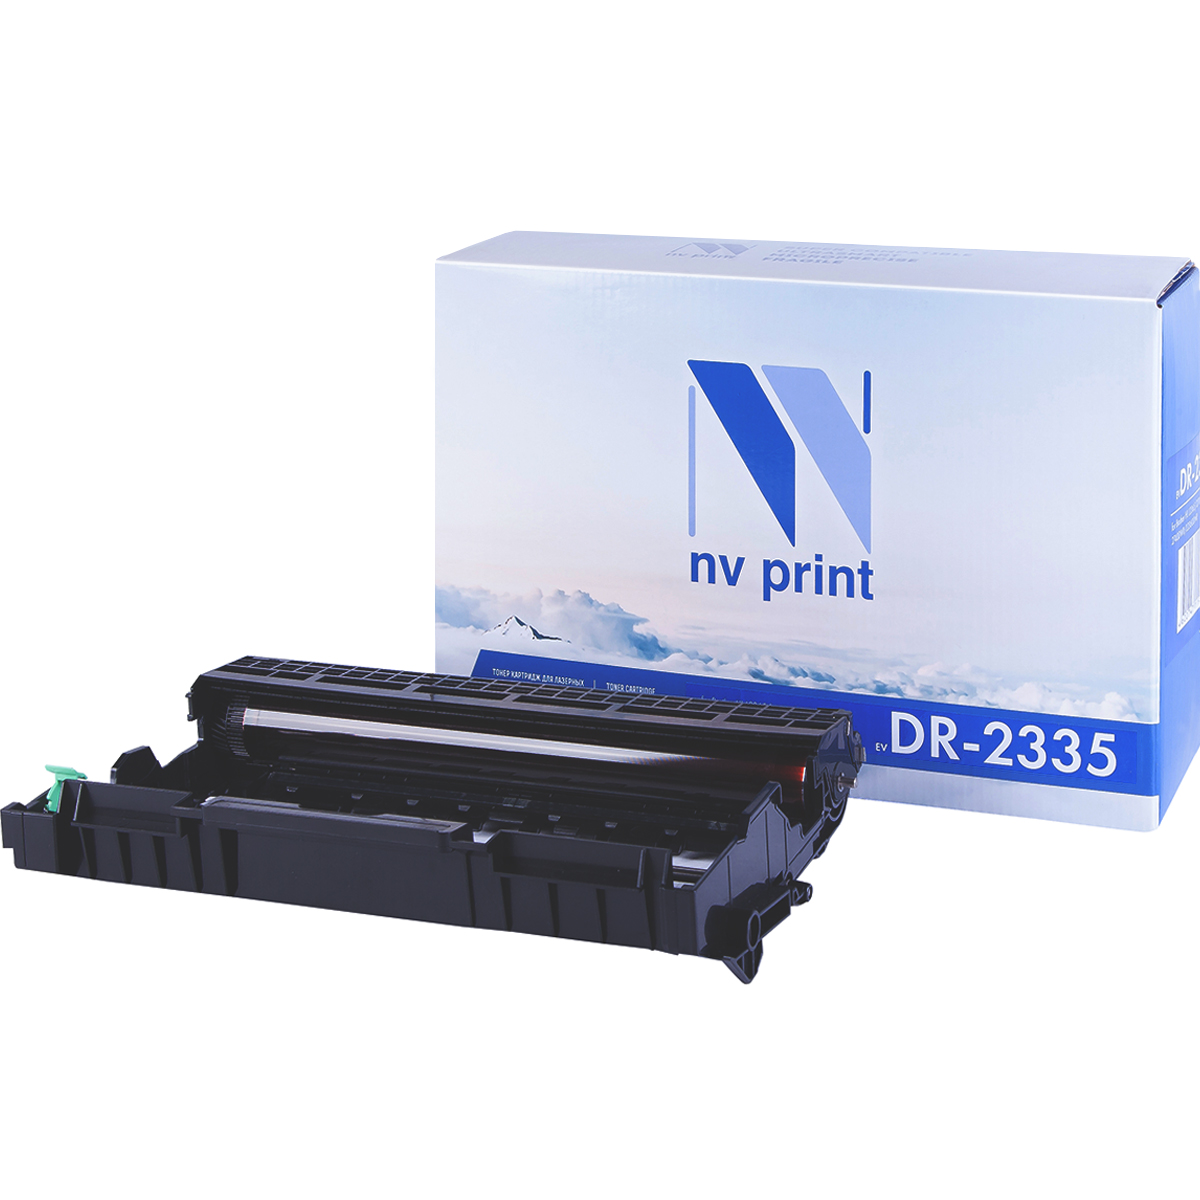 Фотобарабан NV Print Brother DR-2335 набор картриджей nv print nv 106r02773 set2 1500стр черный